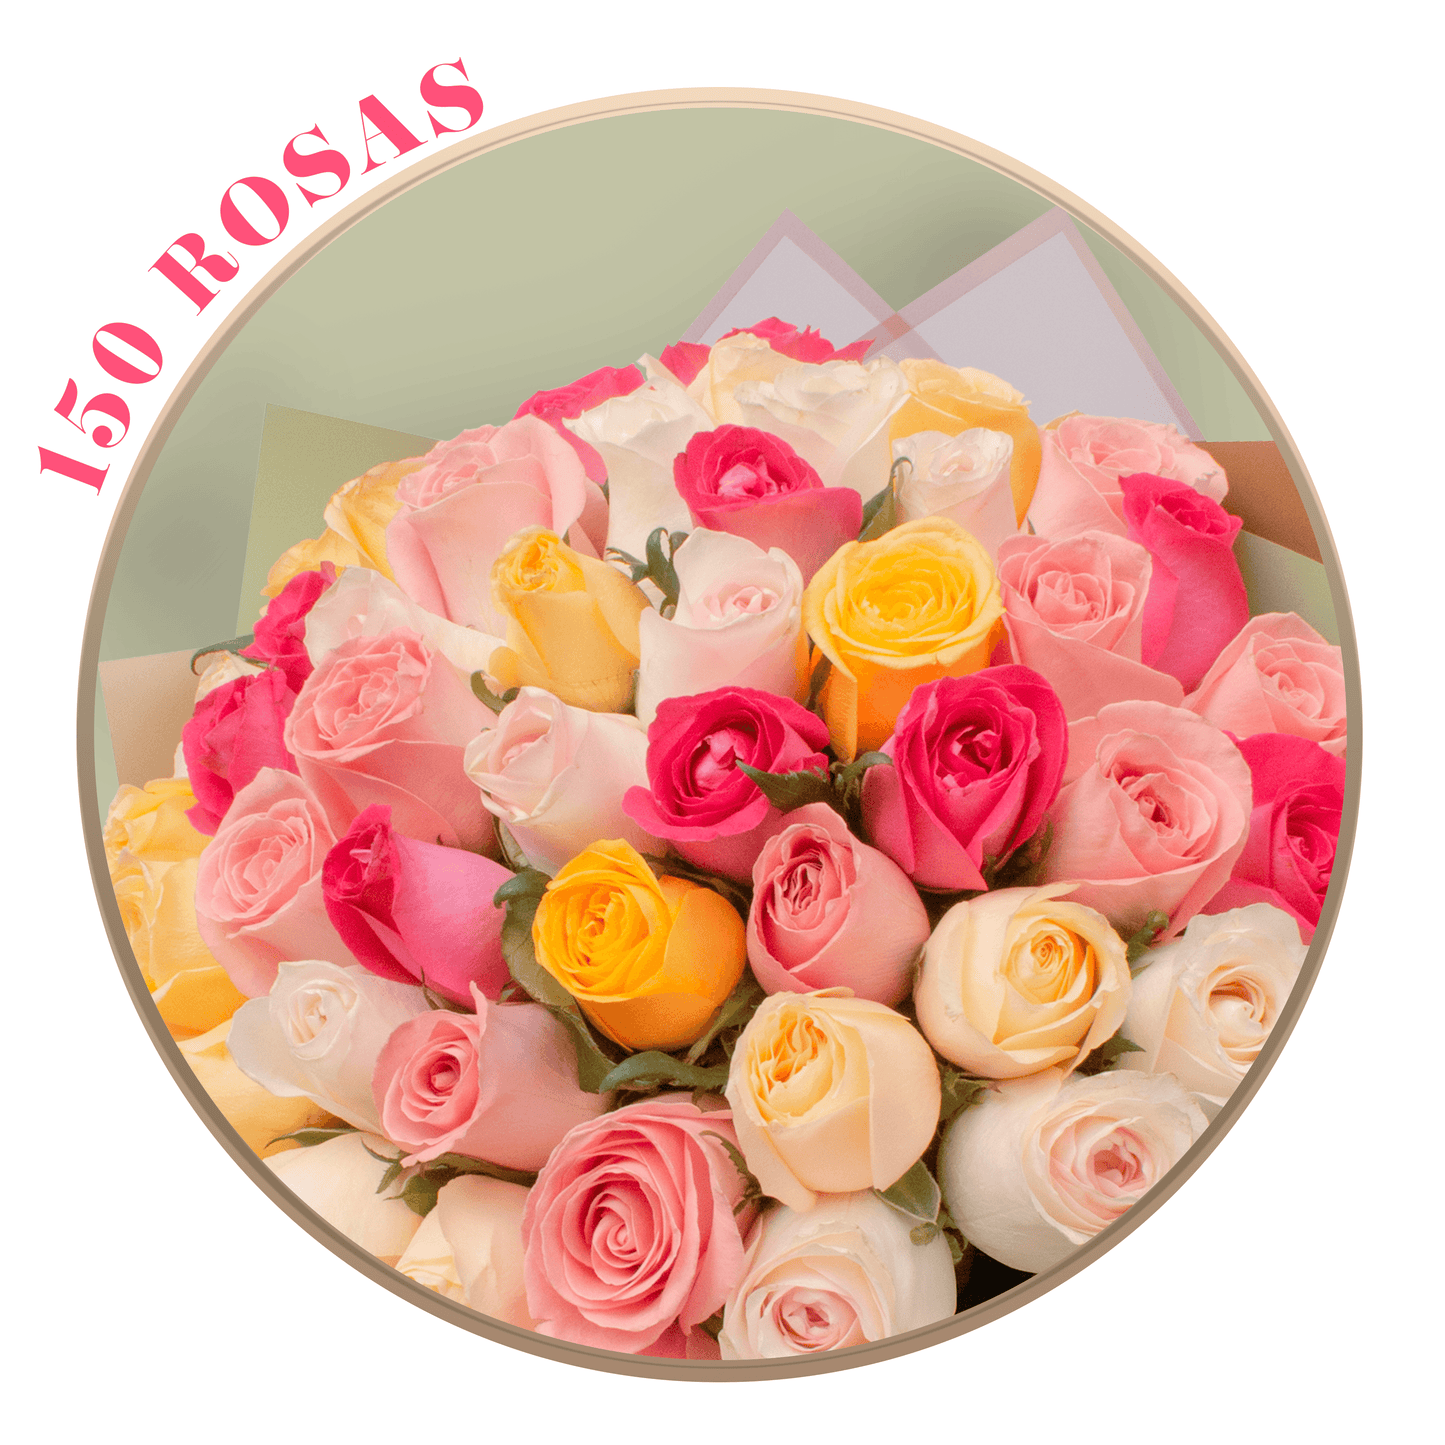 Ramo de Rosas Mixtas (Fucsia Topaz, Amarilla, Peach Avalanche, Beige y Rosado Vintage), presentación de 50, 100 o 150 rosas